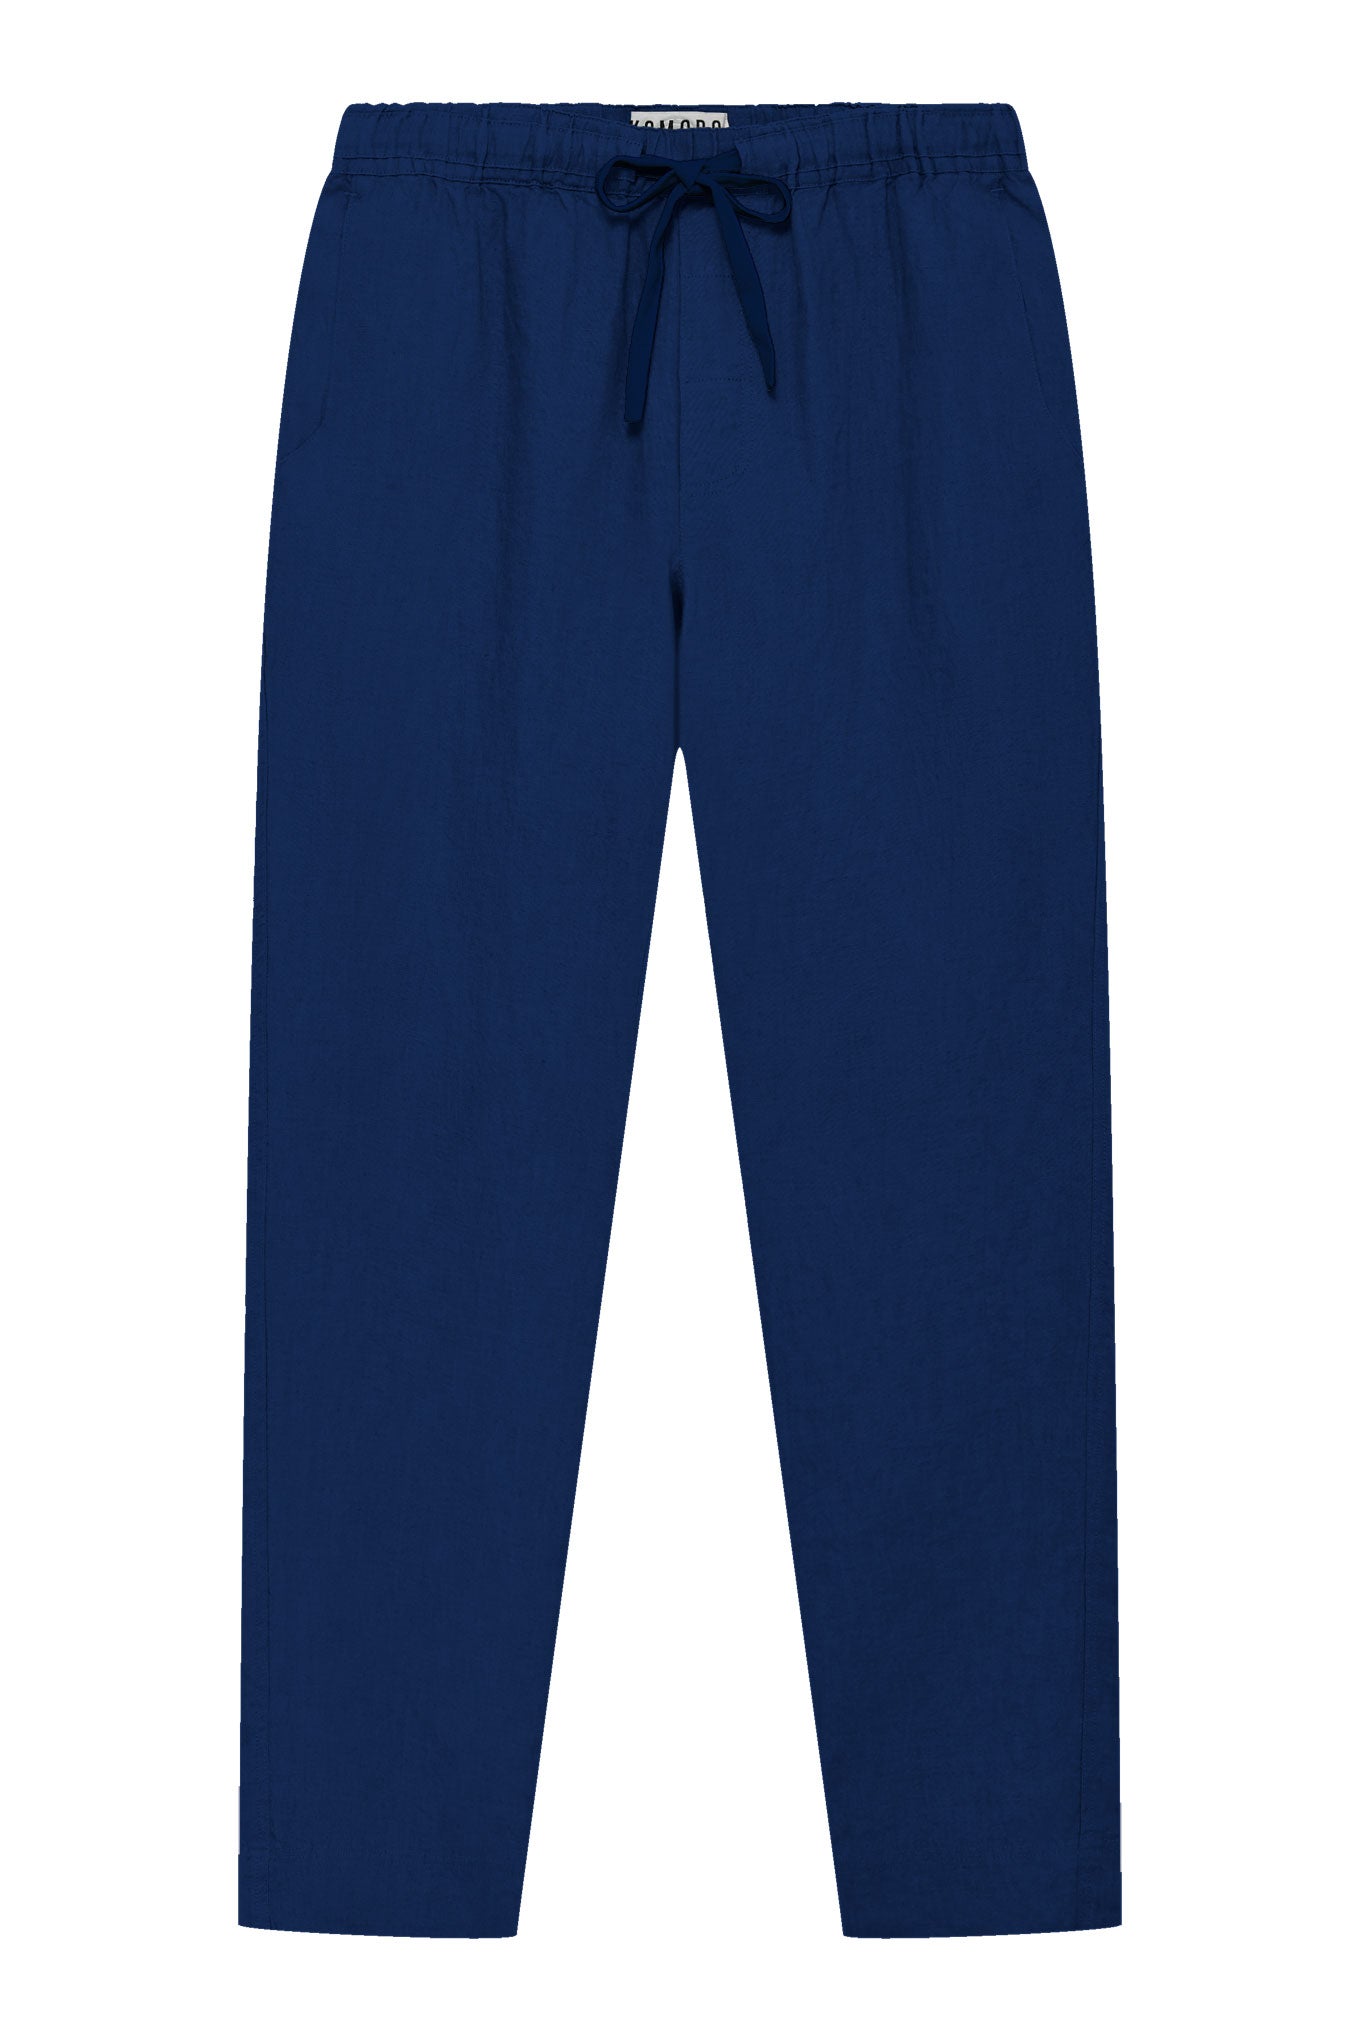 Komodo Men's Blue August - Linen Trouser Navy